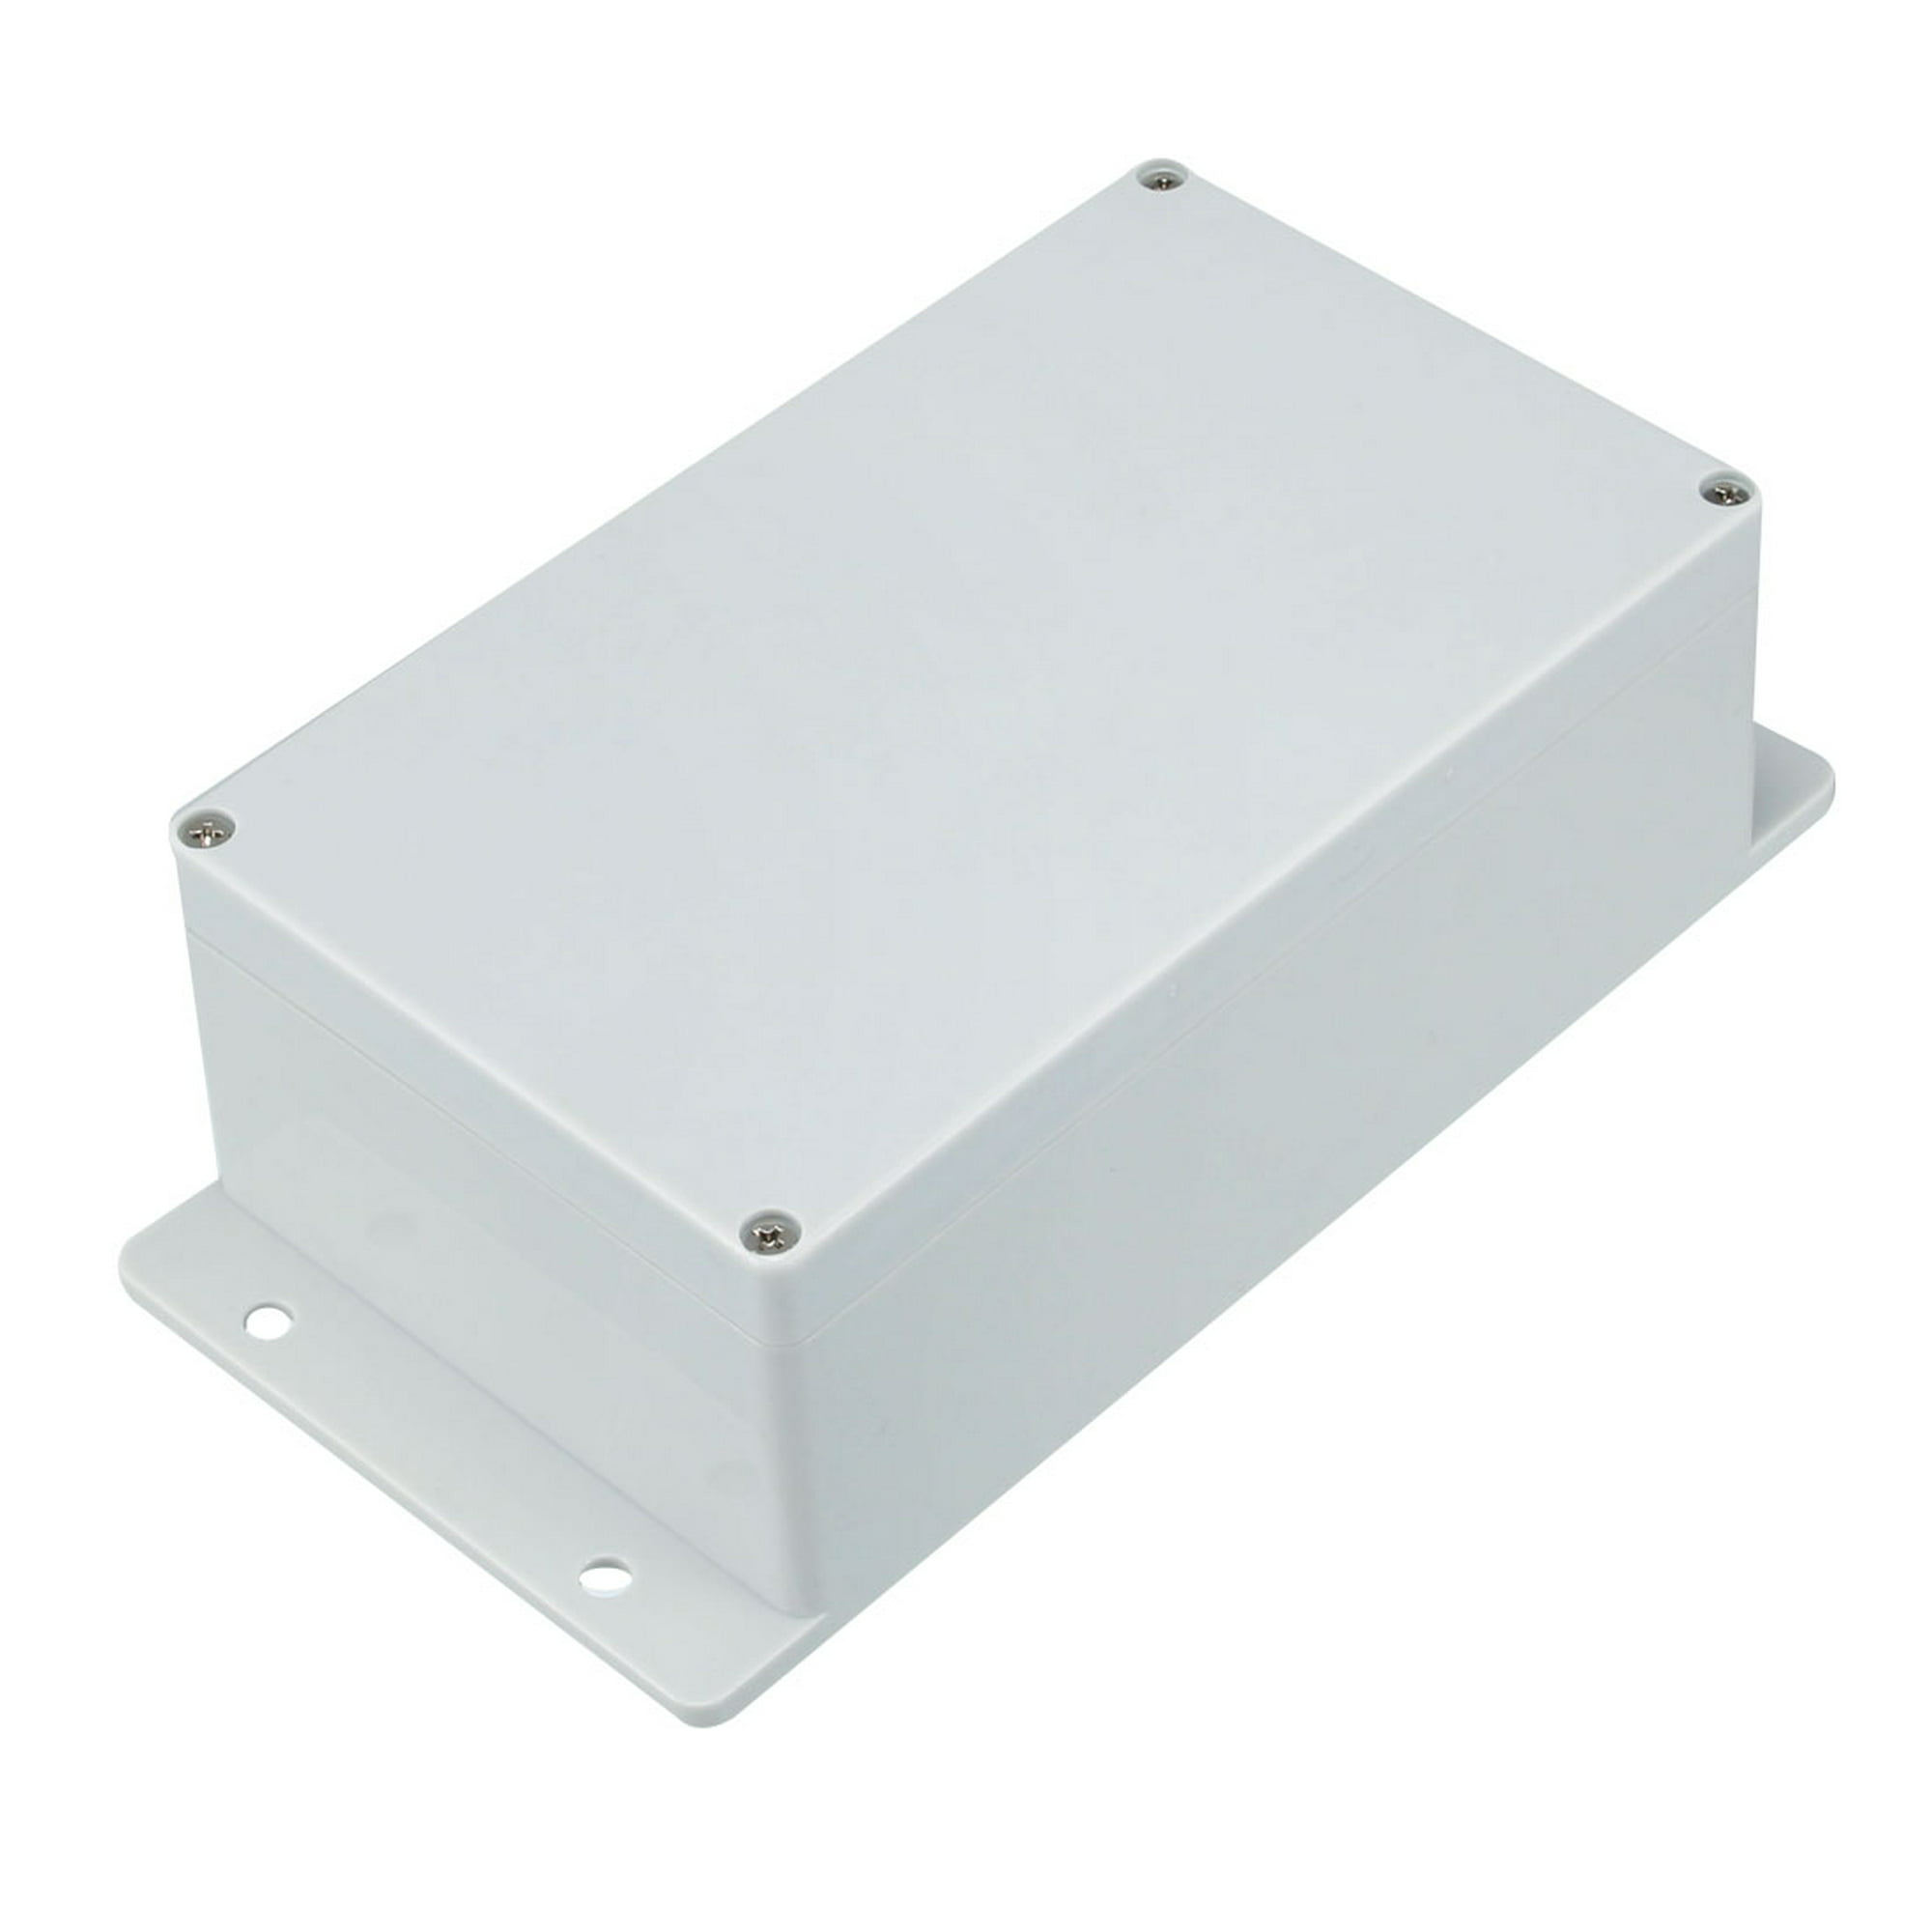 Caja estanca, Caja estanca exterior, Caja estanca exterior electrica, Caja  de conexiones blanca pequeña, Caja de conexiones IP65 ABS resistente al